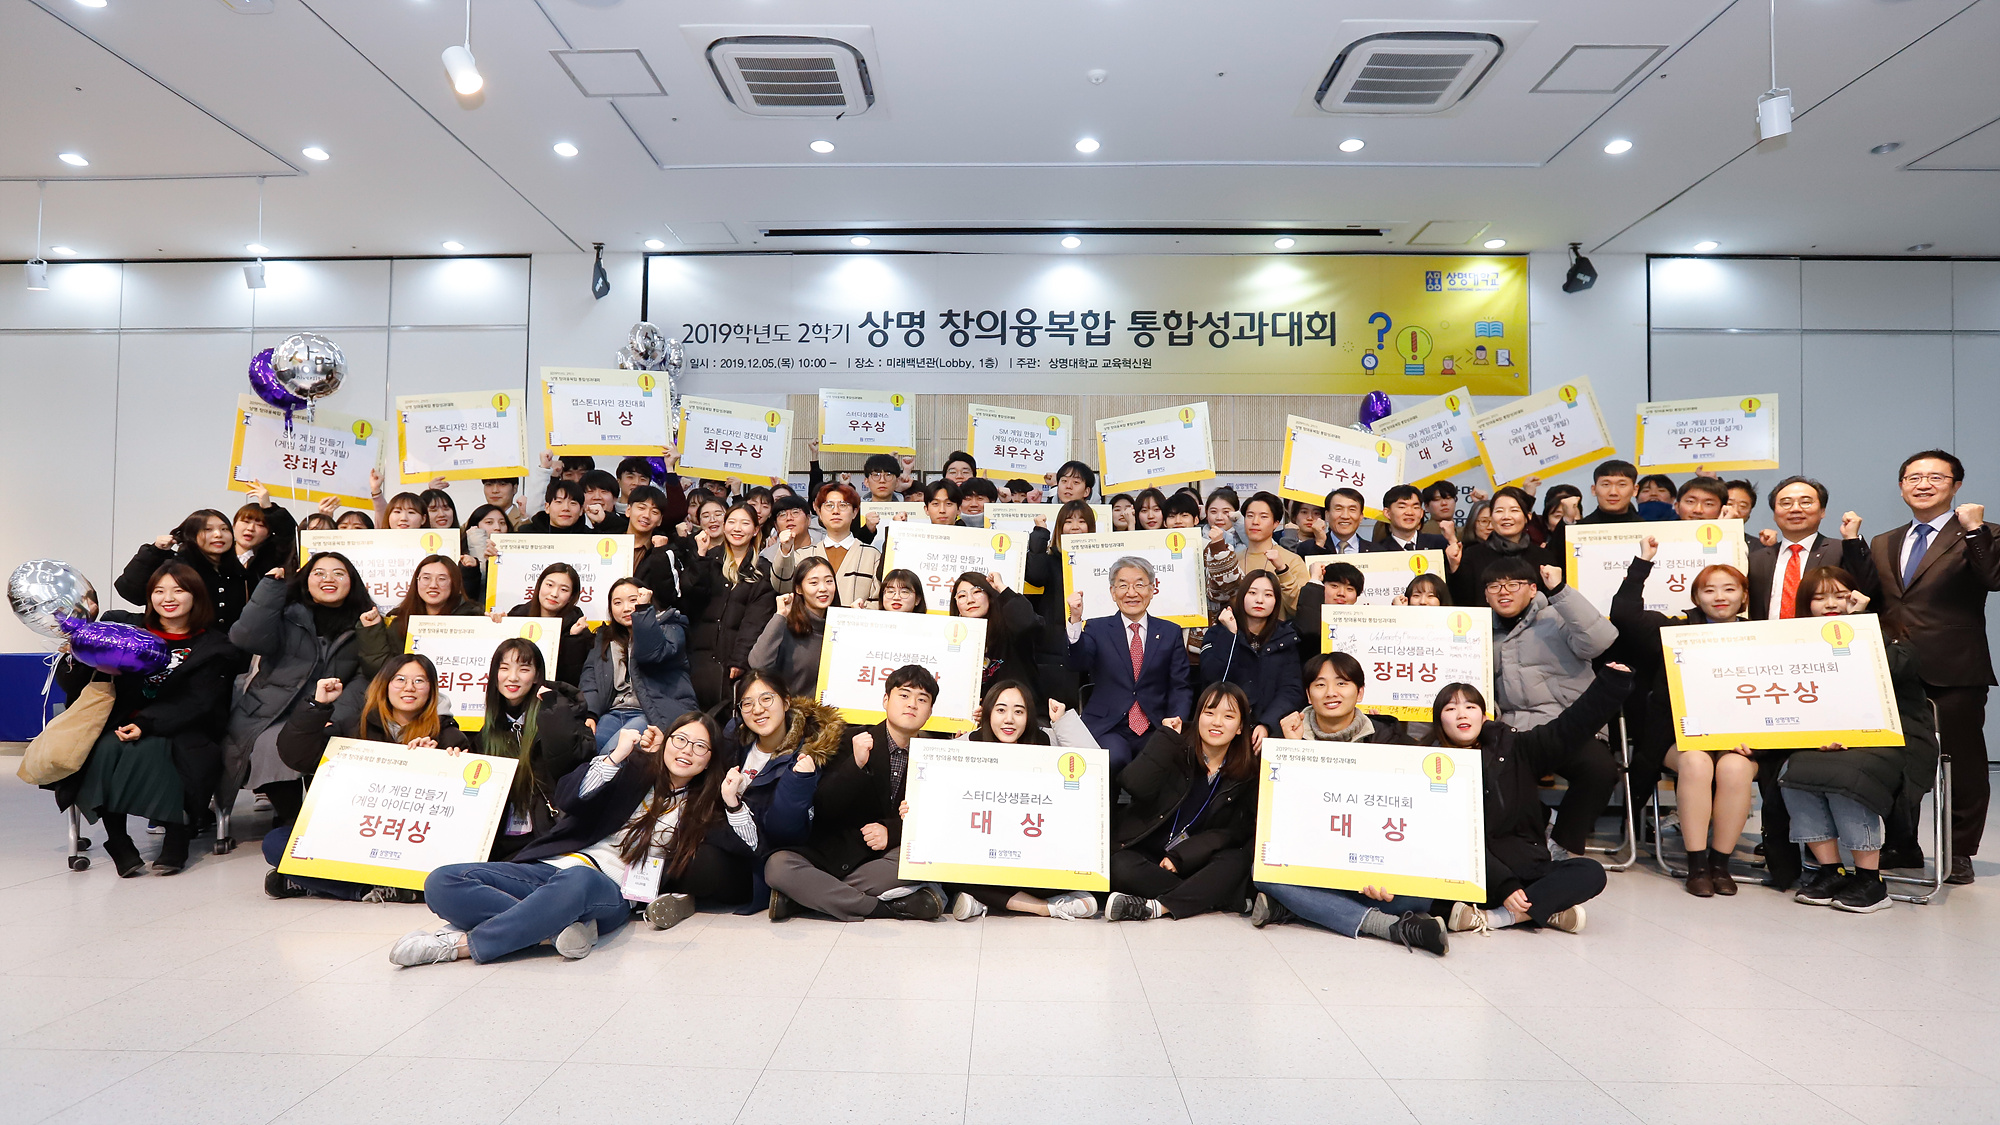 ▲ 12월 5일 서울캠 창의융복합 통합성과대회 수상식이 진행되었다.